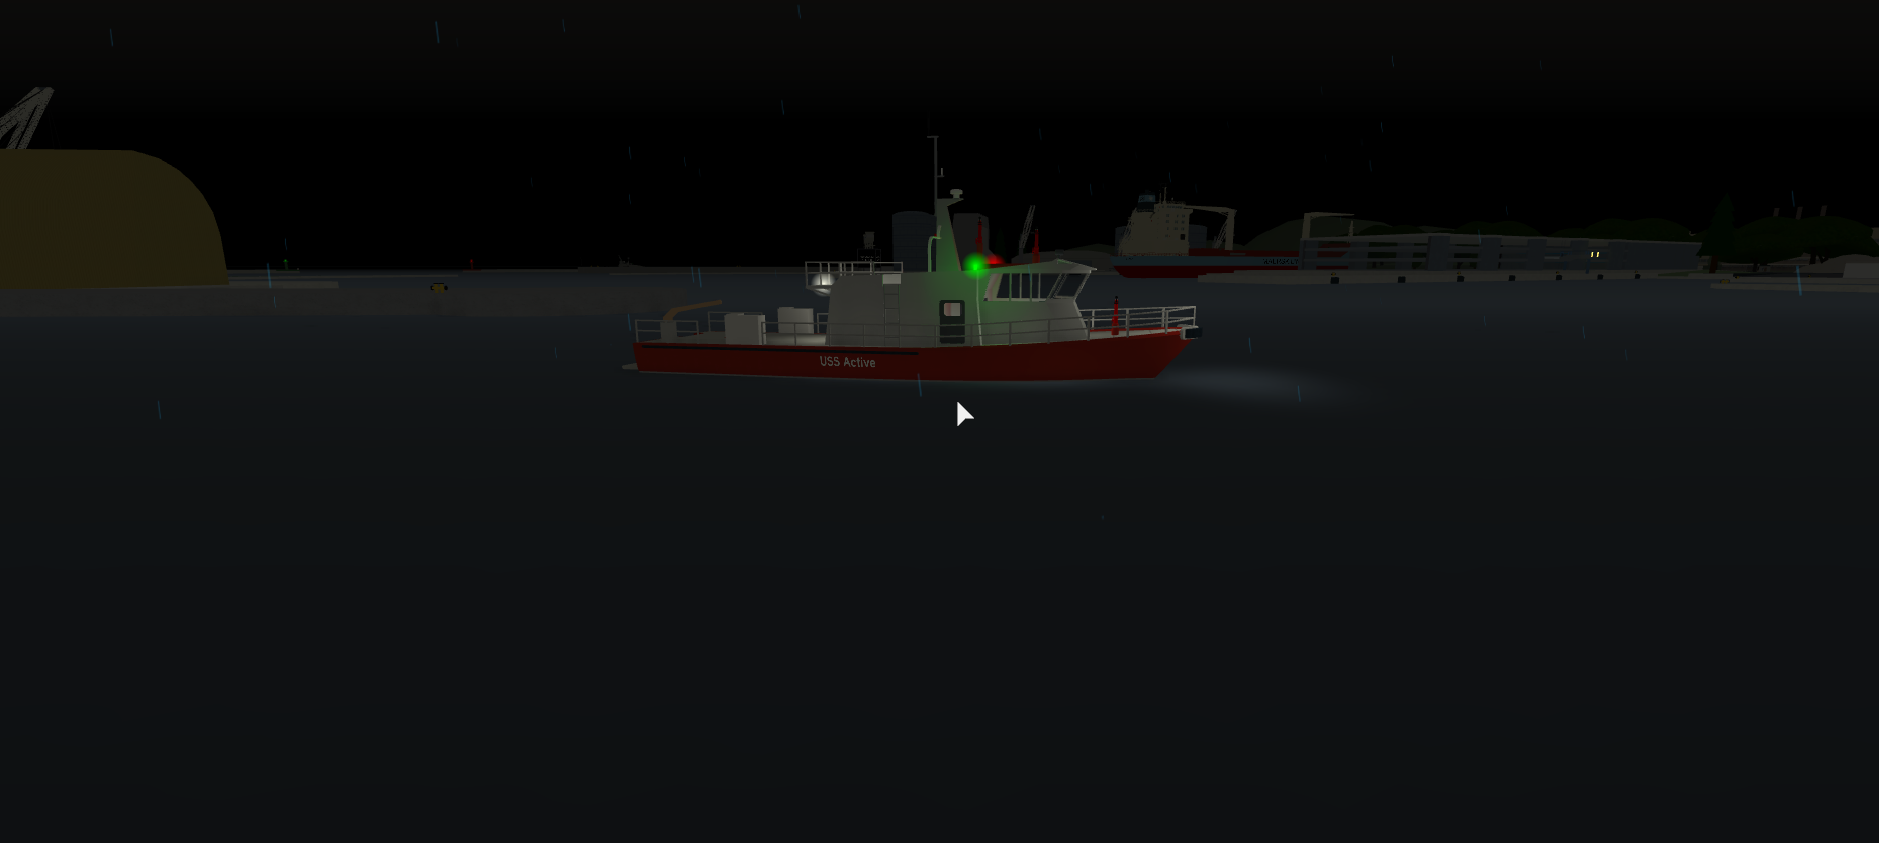 Fireboat Dynamic Ship Simulator Iii Wiki Fandom - update dynamic ship simulator iii roblox